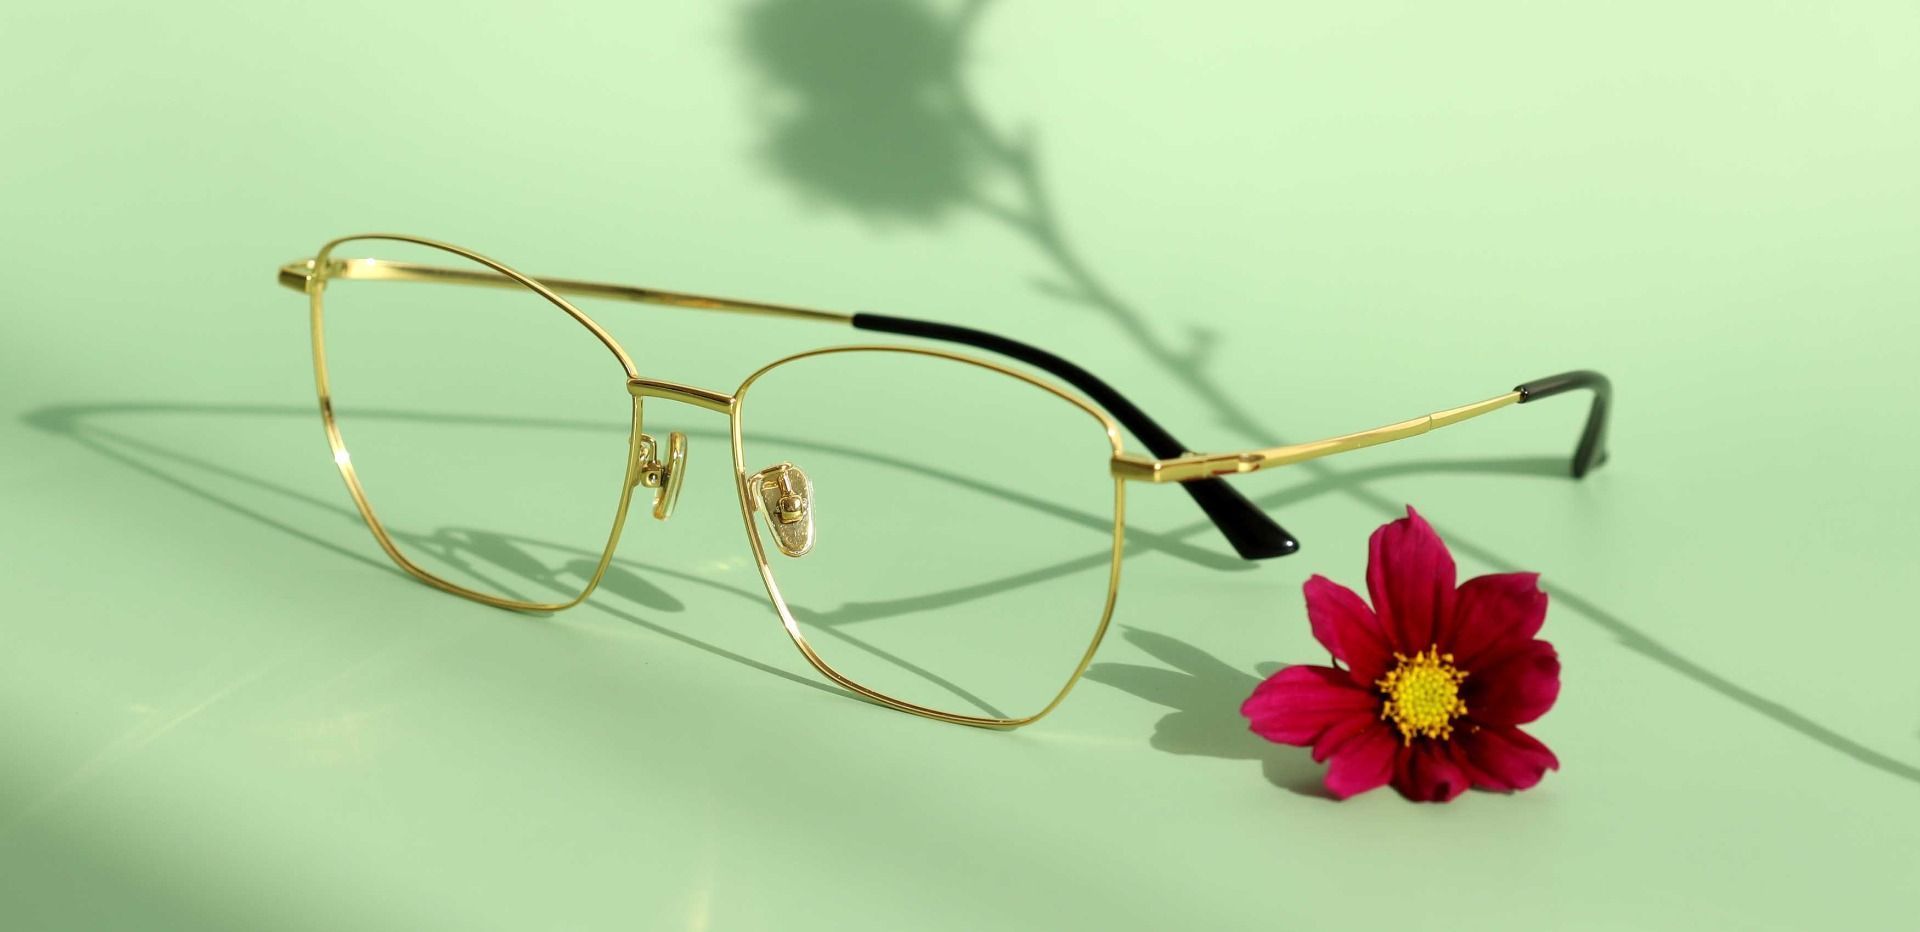 Boswell Geometric Eyeglasses Frame - Gold